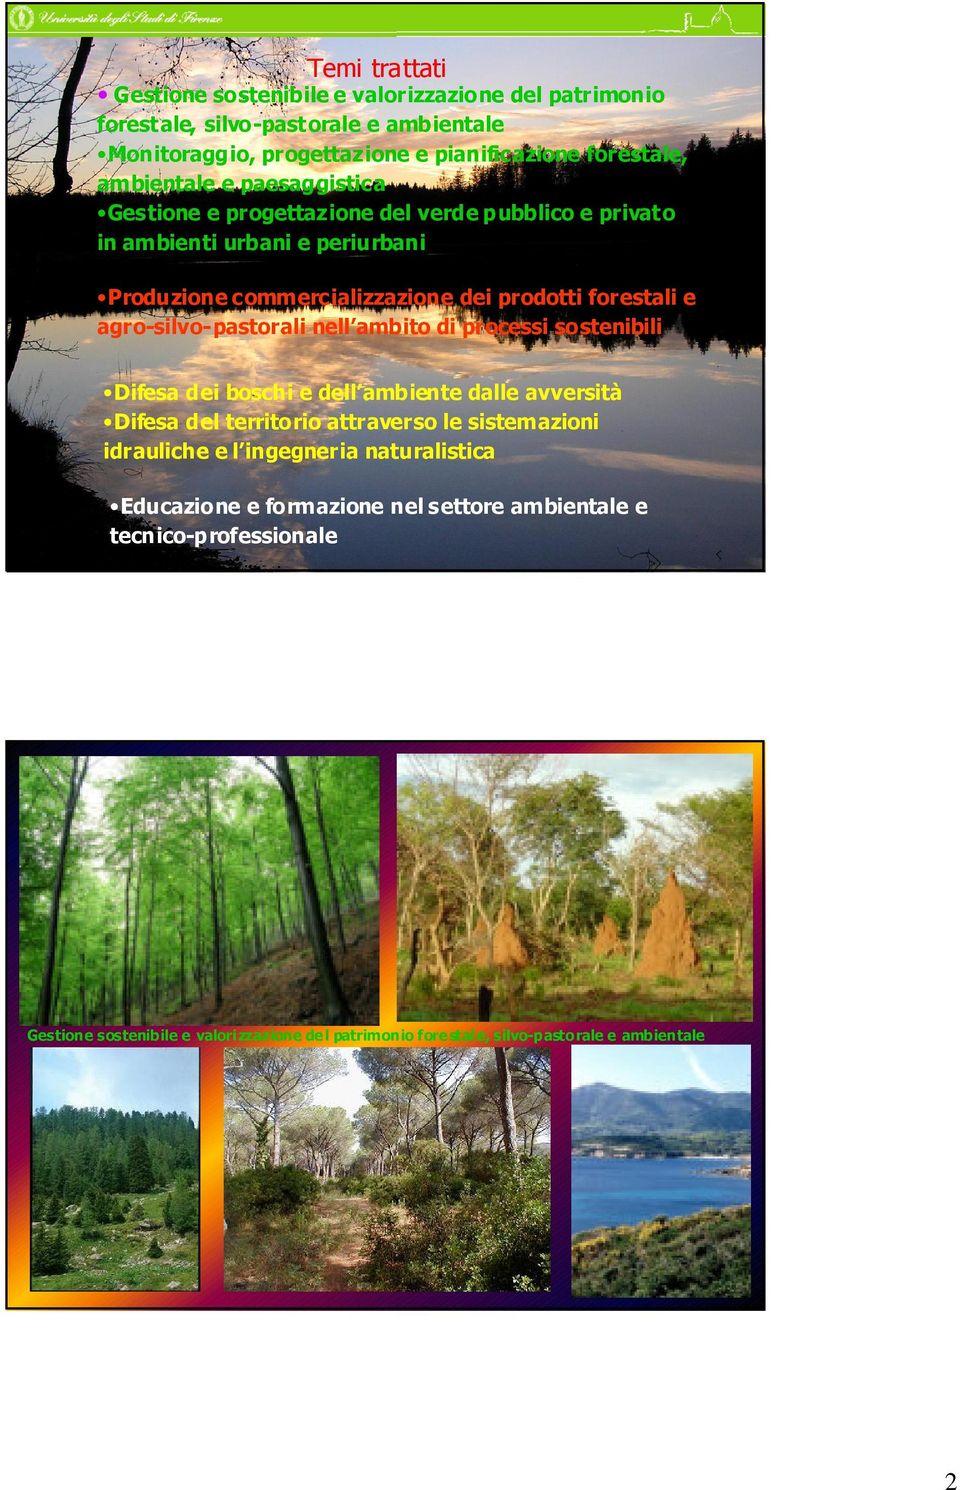 agro-silvo-pastorali nell ambito di processi sostenibili Difesa dei boschi e dell ambiente dalle avversità Difesa del territorio attraverso le sistemazioni idrauliche e l